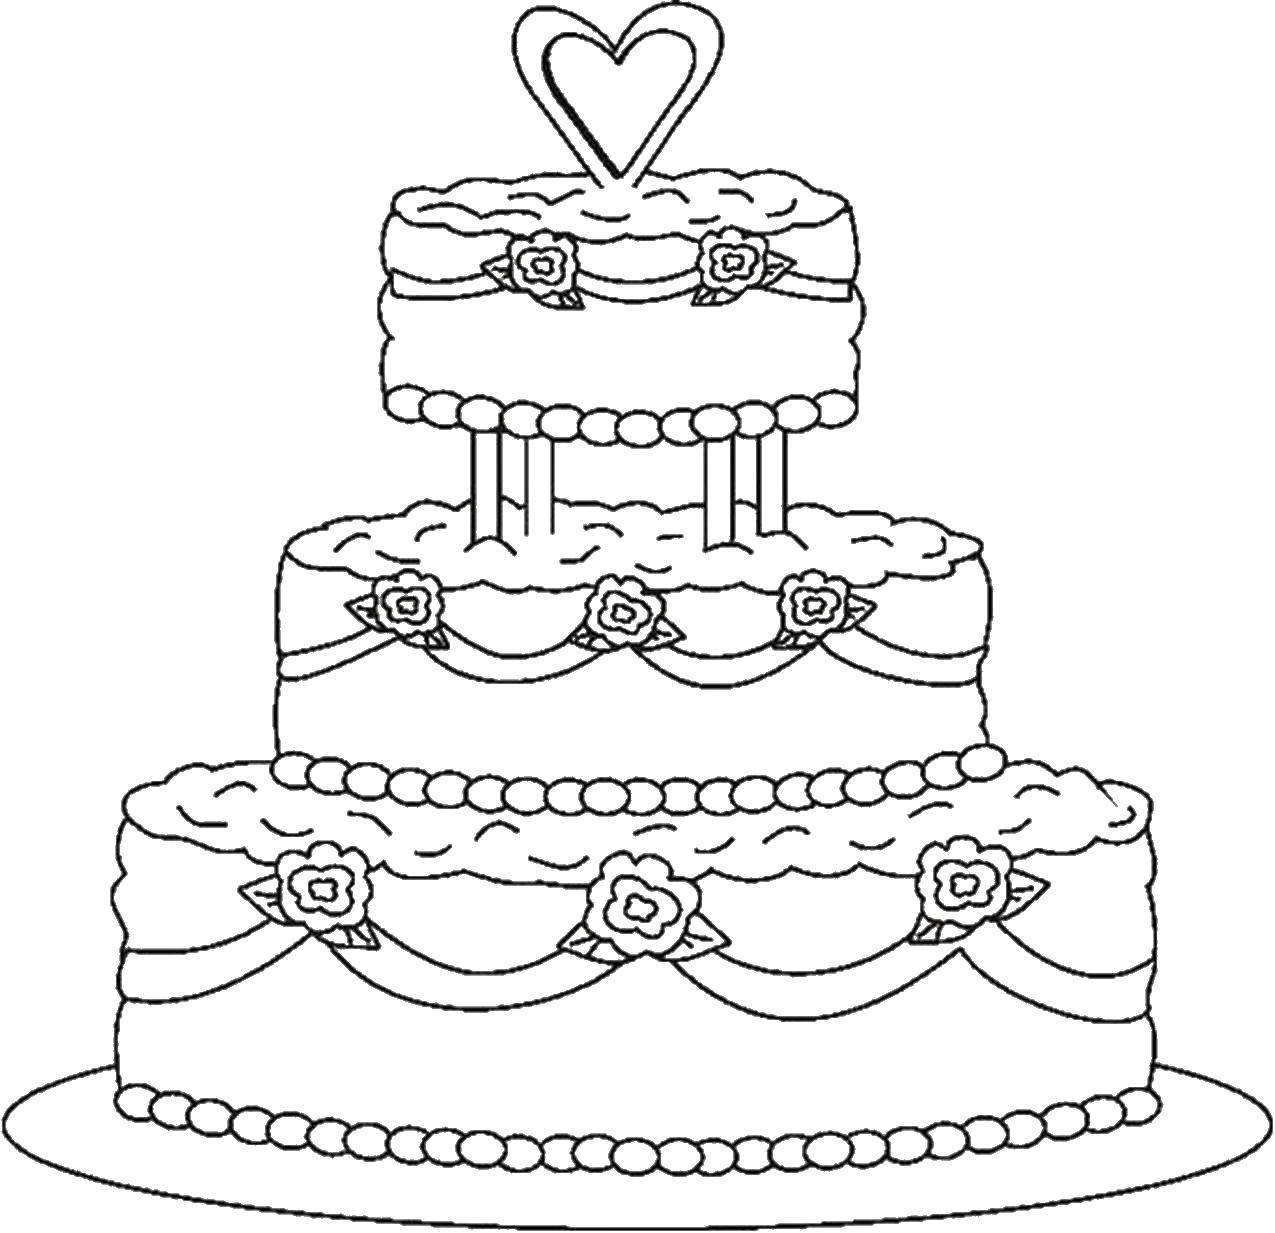 Опис: розмальовки  Весільний торт. Категорія: торти. Теги:  торти, весілля, солодке.